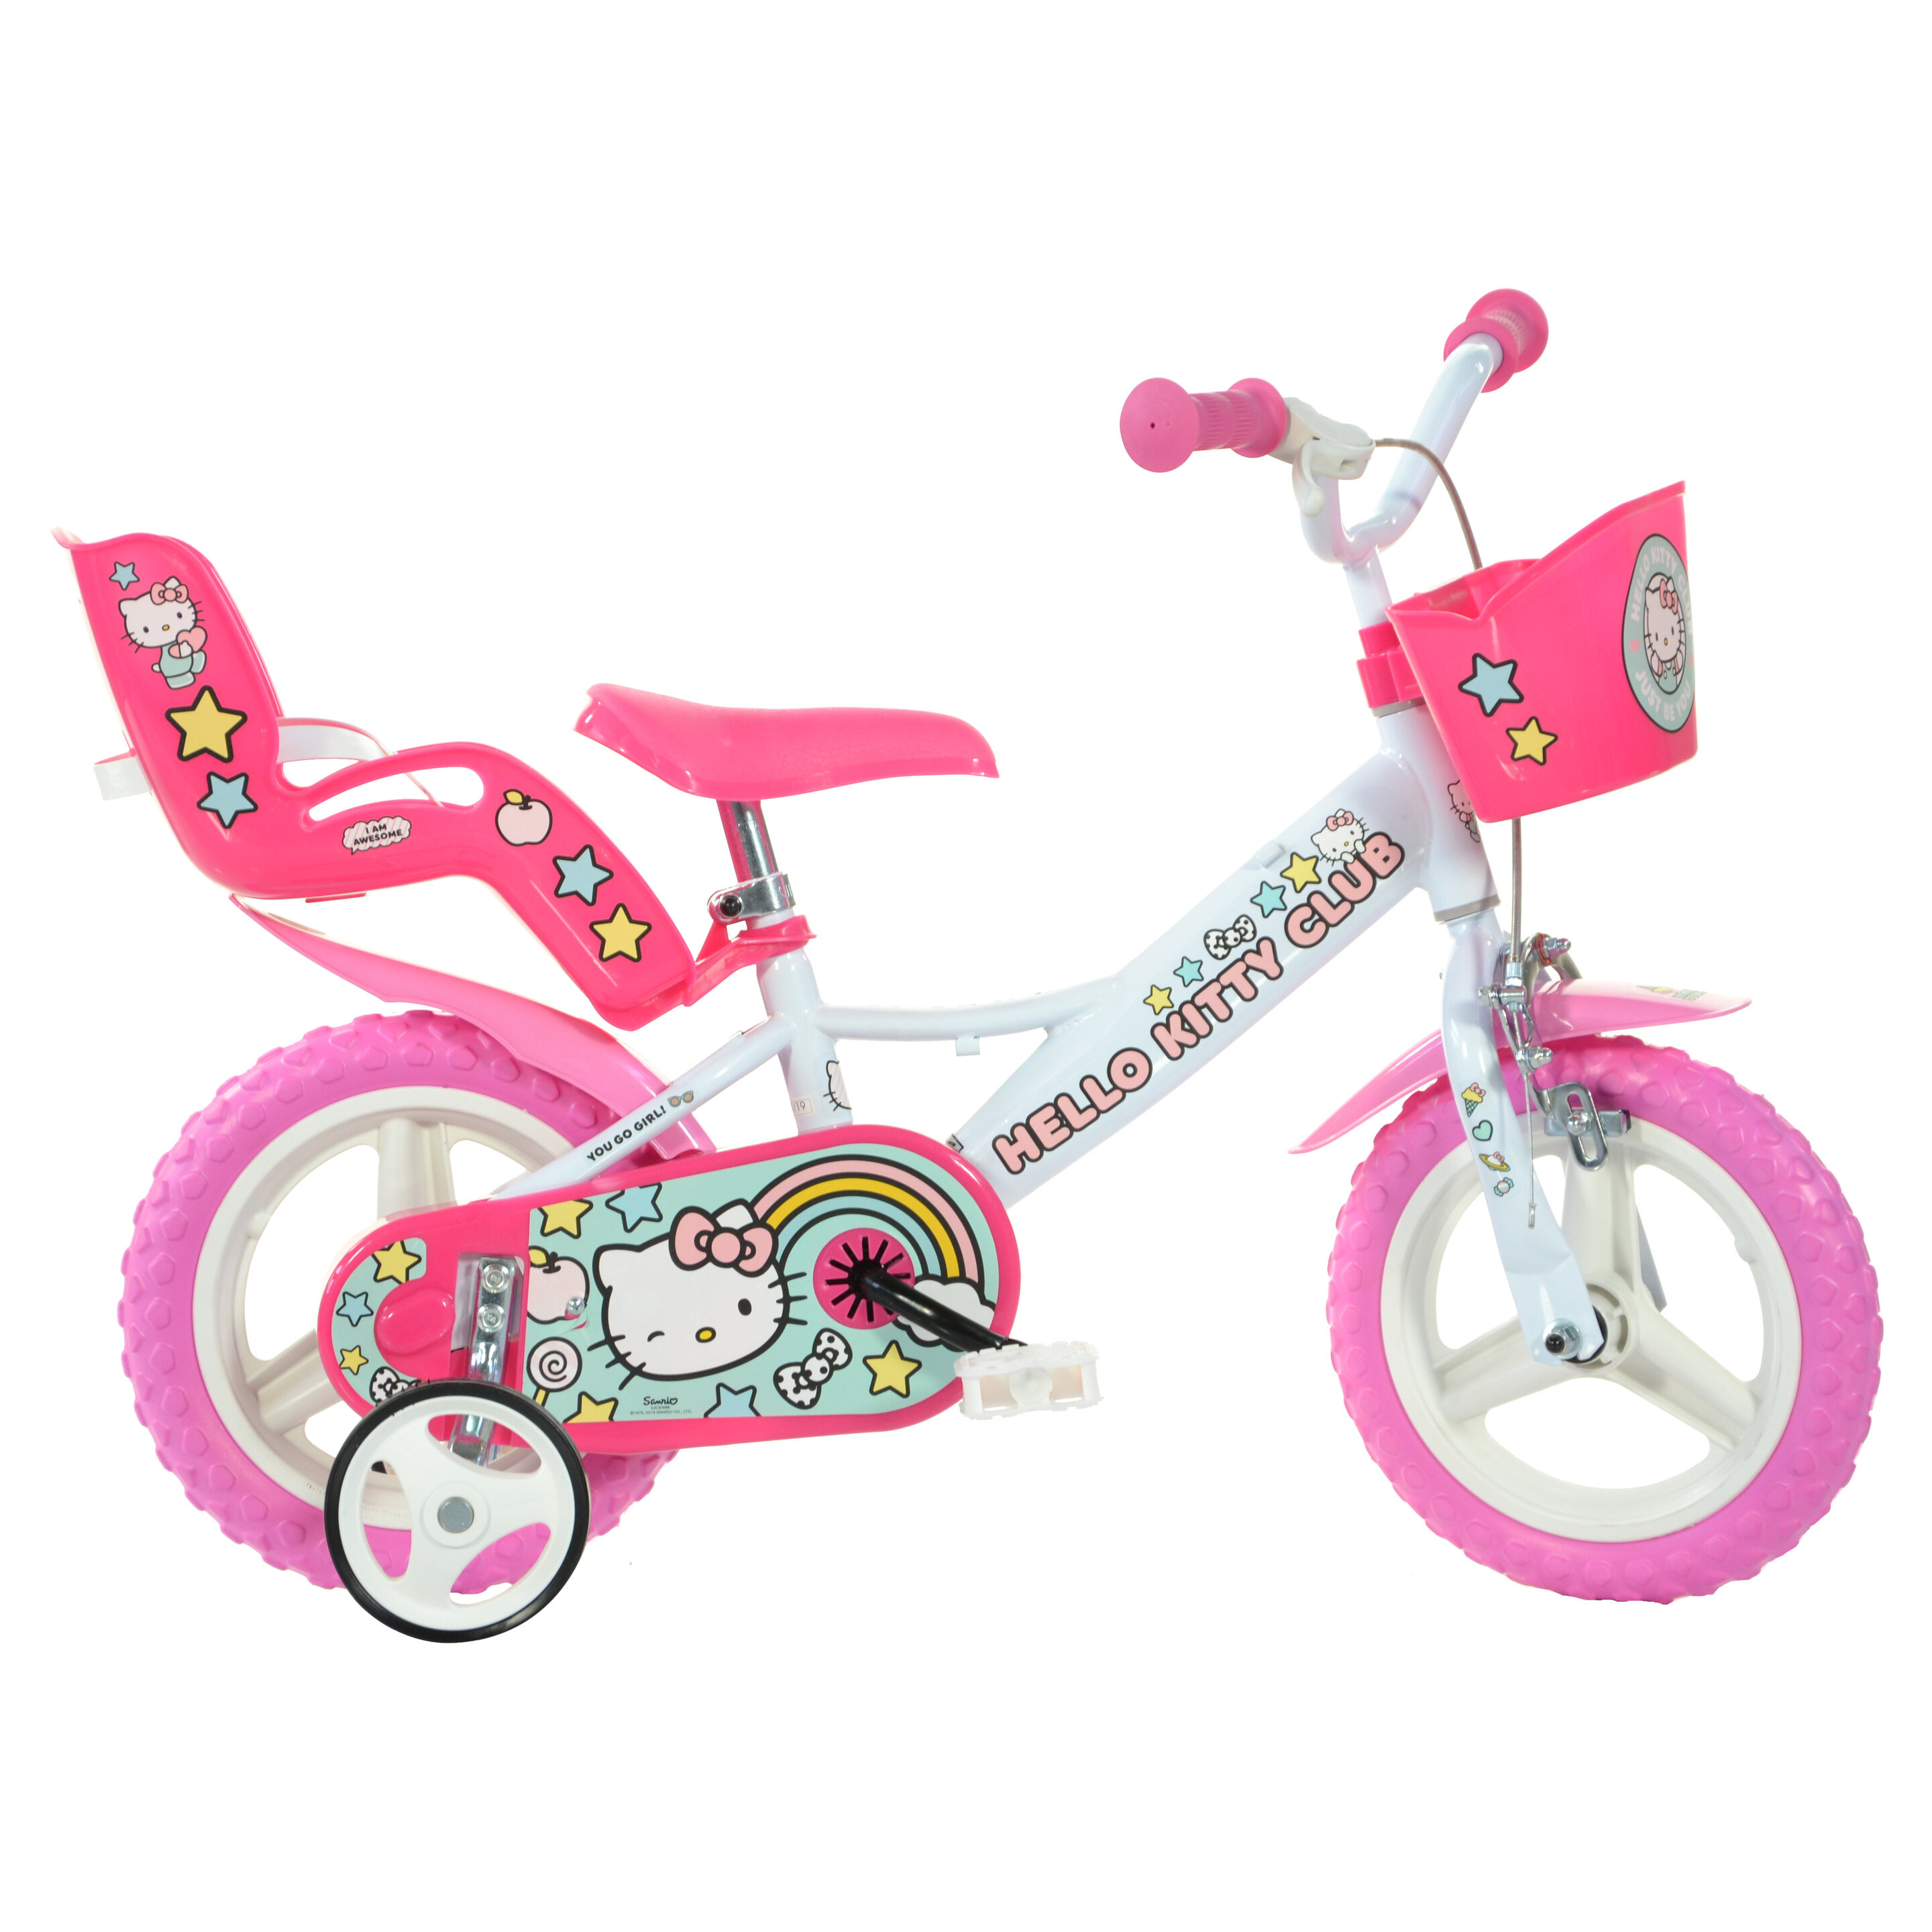 Bicicleta Infantil Hello Kitty 12 Pulgadas - rosa - 